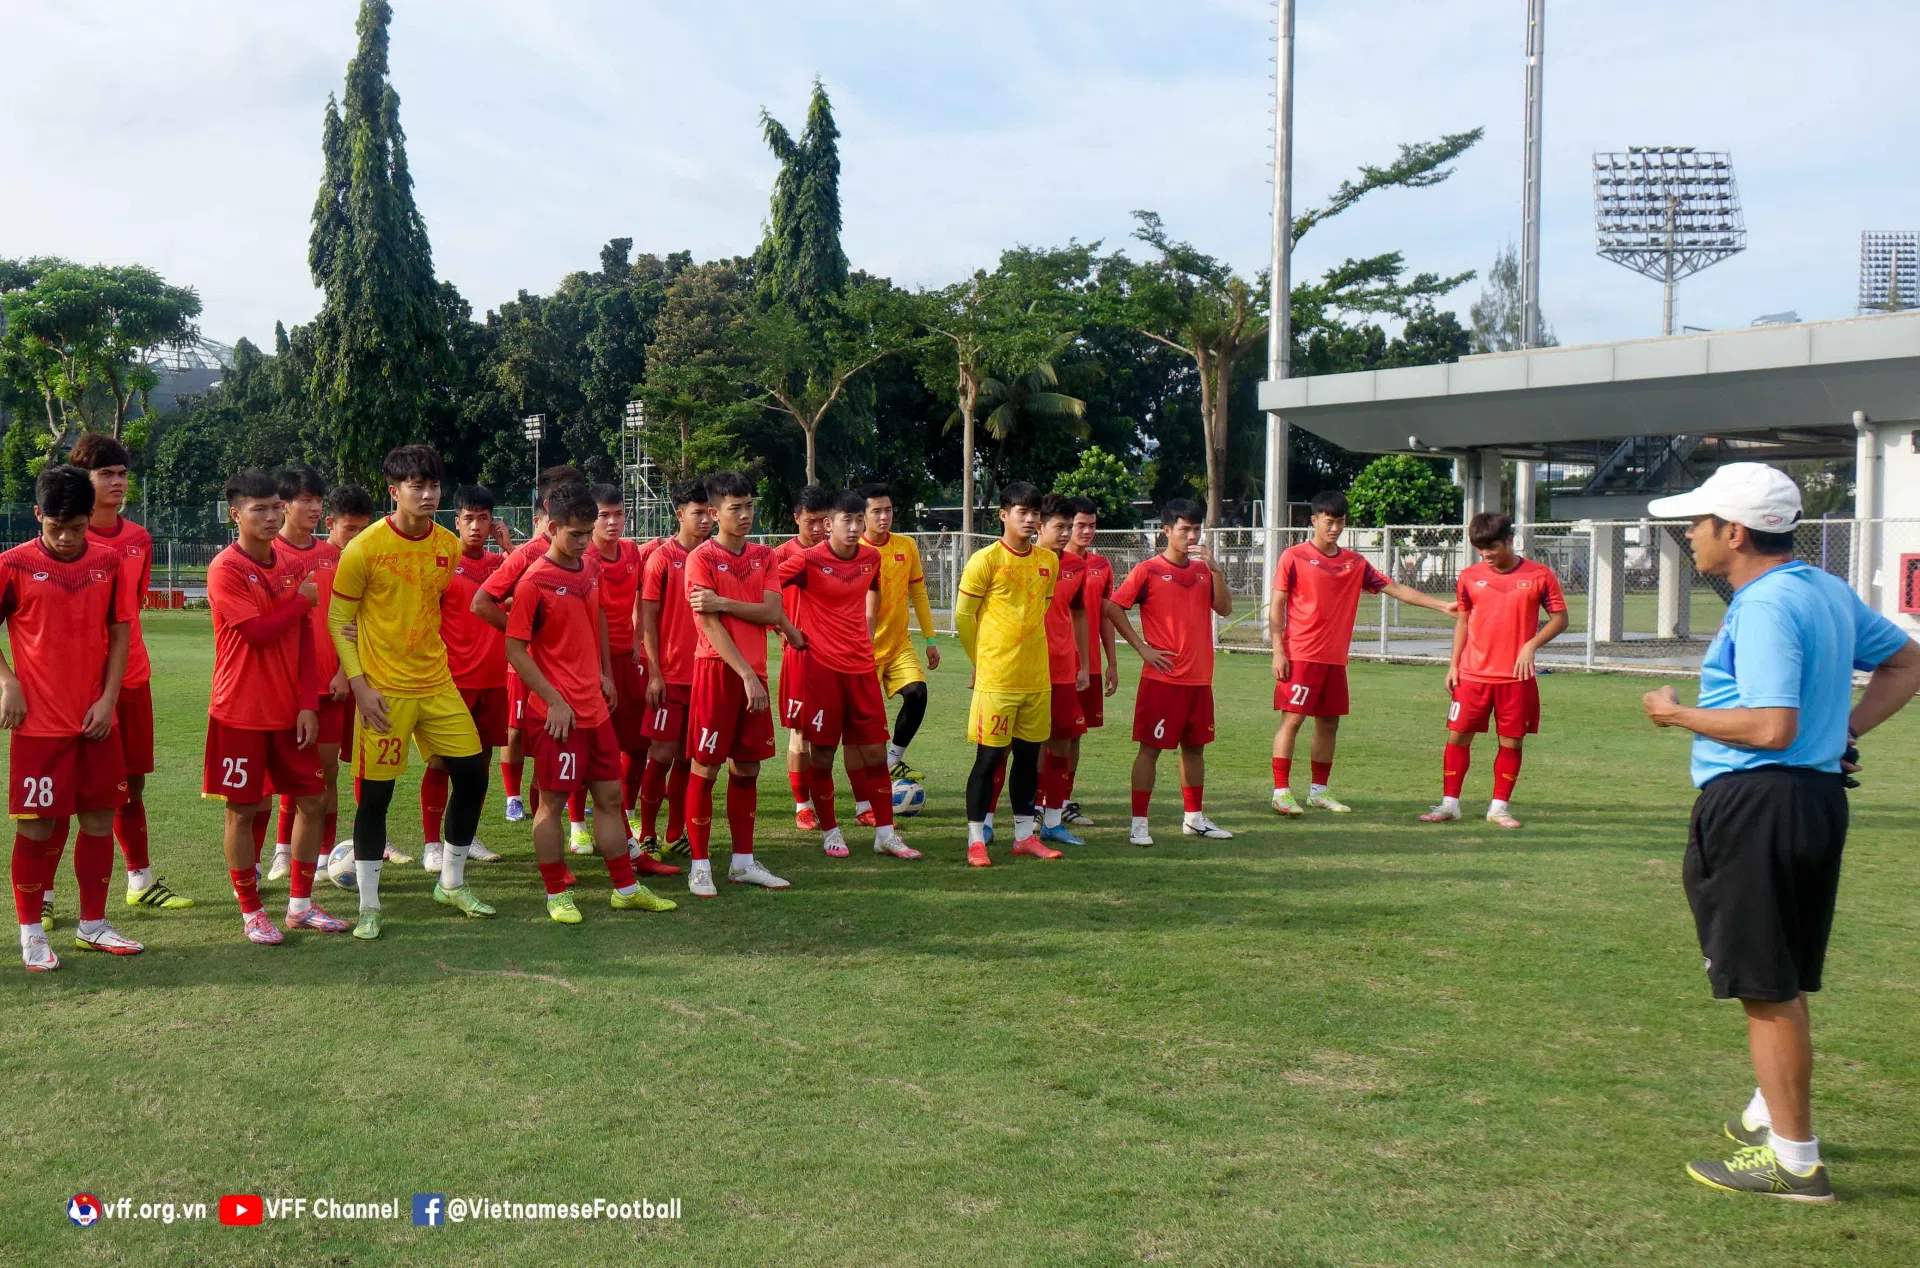 VFF lùi giải hạng Nhất, U19 Việt Nam được hưởng lợi gì?